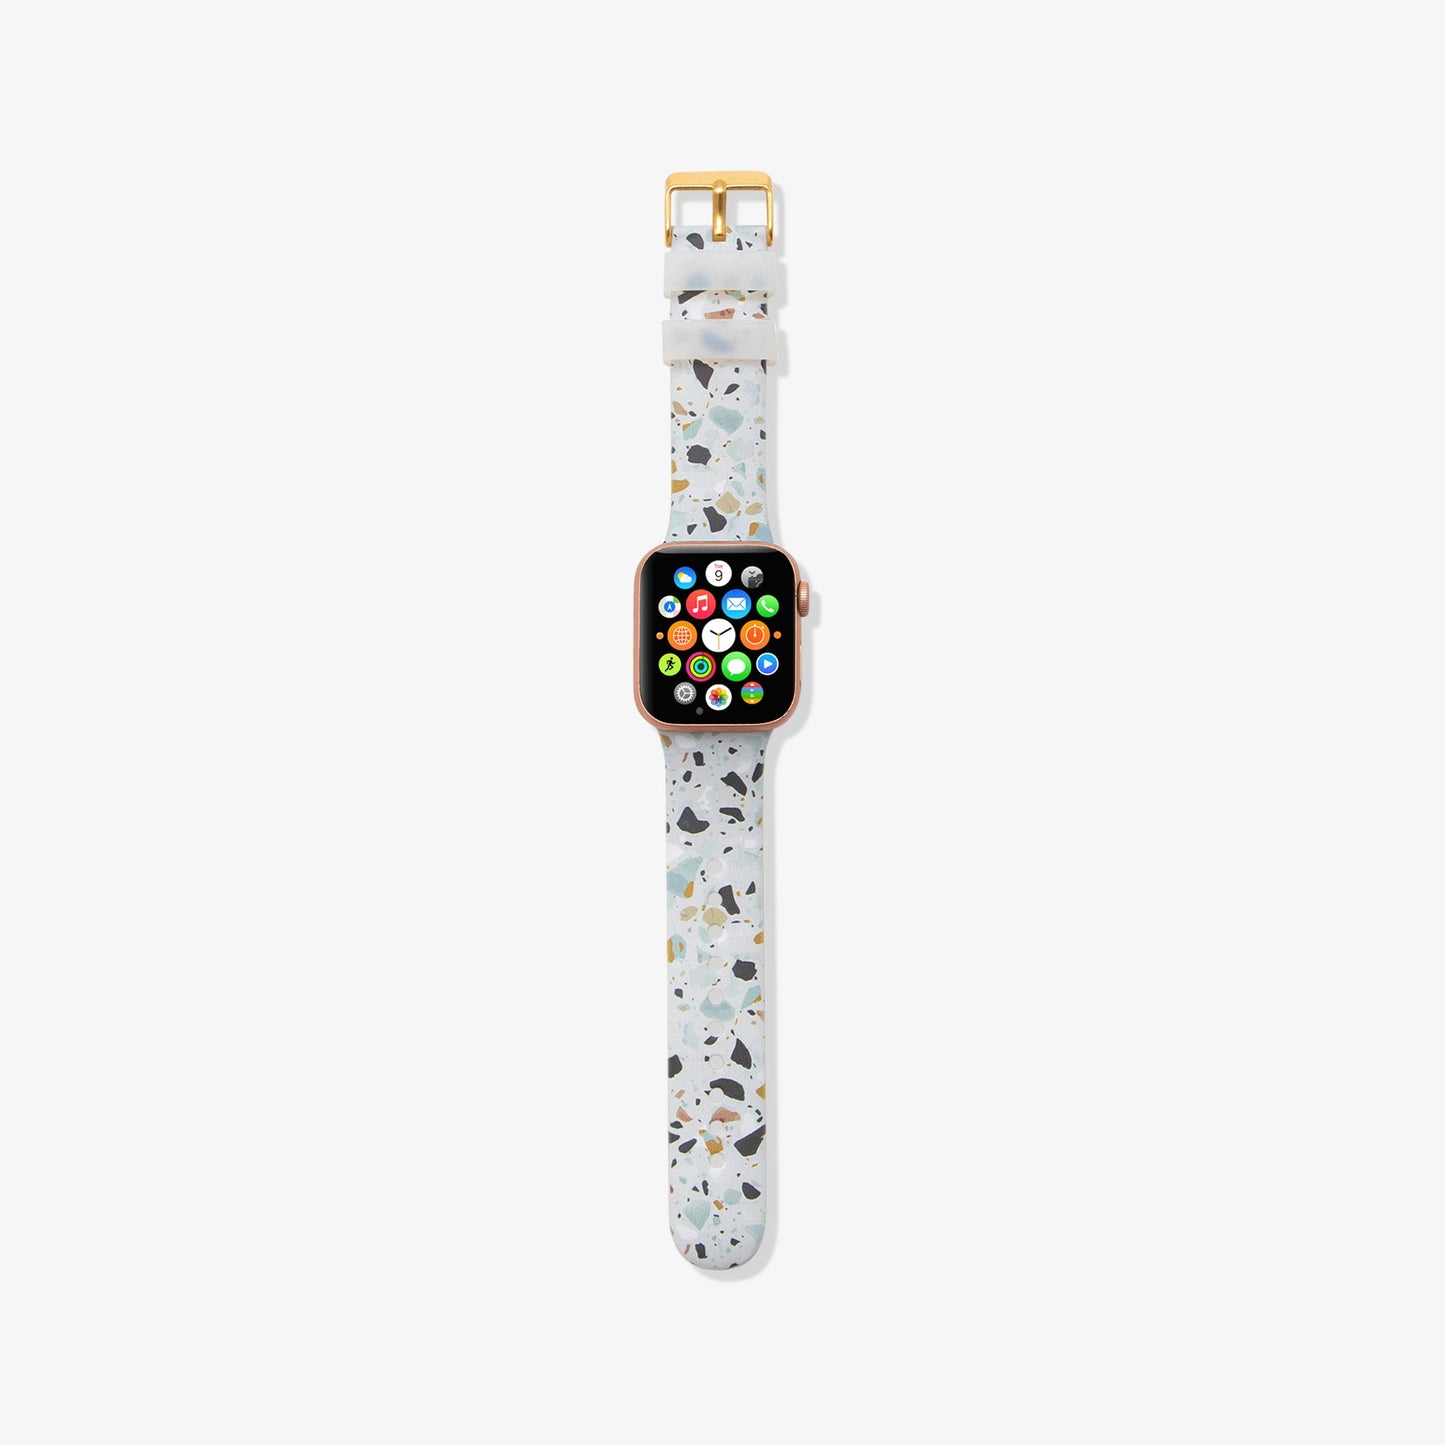 [SALE] Silicone Apple Watch Band - Confetti